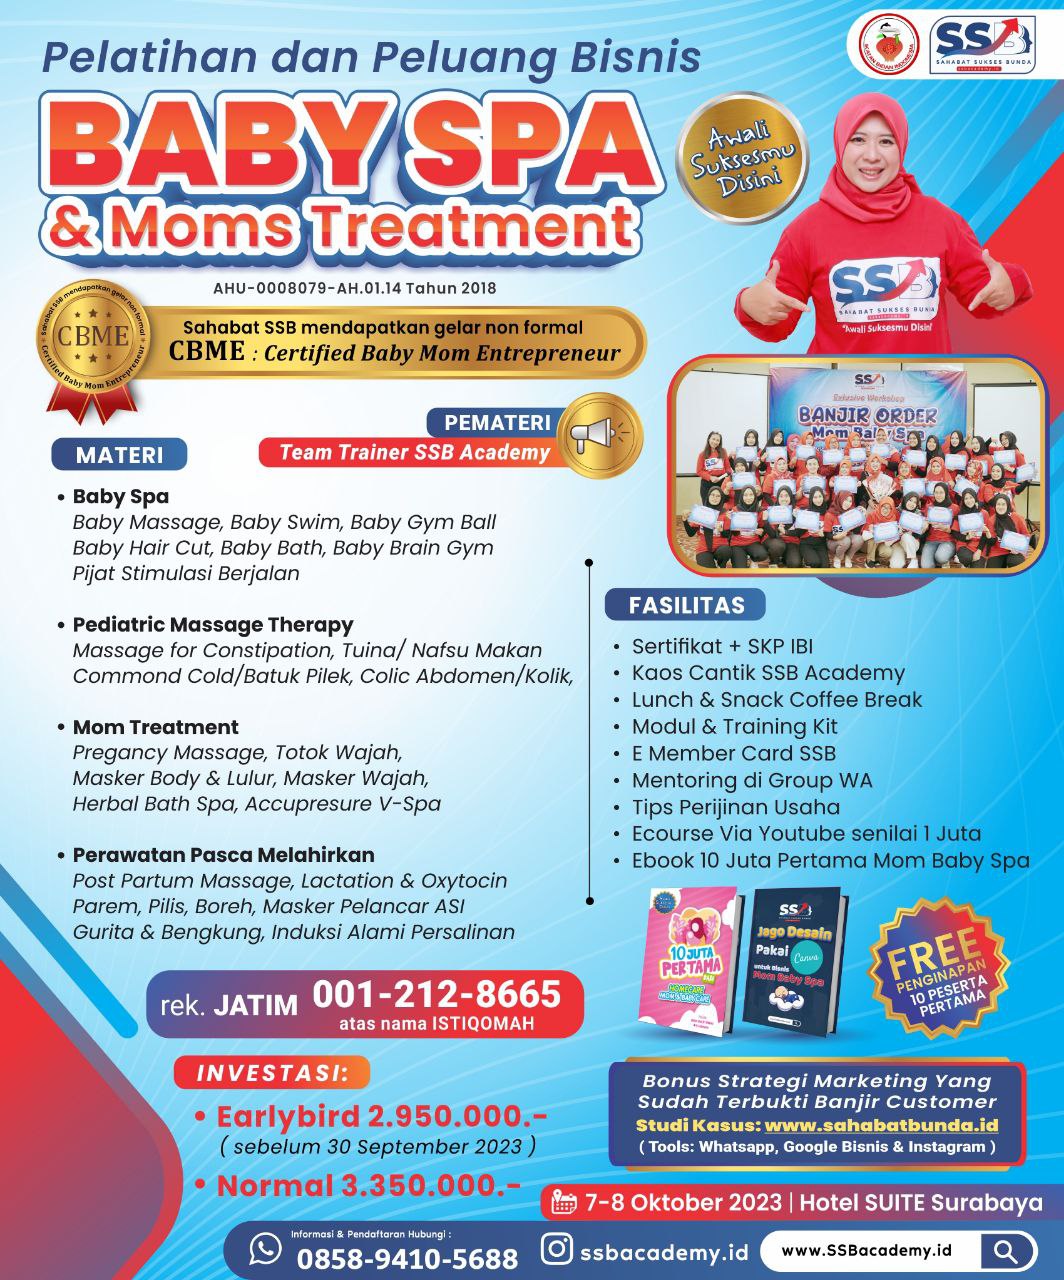 Pelatihan Baby Spa Bersertifikat di Ponorogo Bersertifikat CBME ( Certified Baby Moms Entrepreneur )